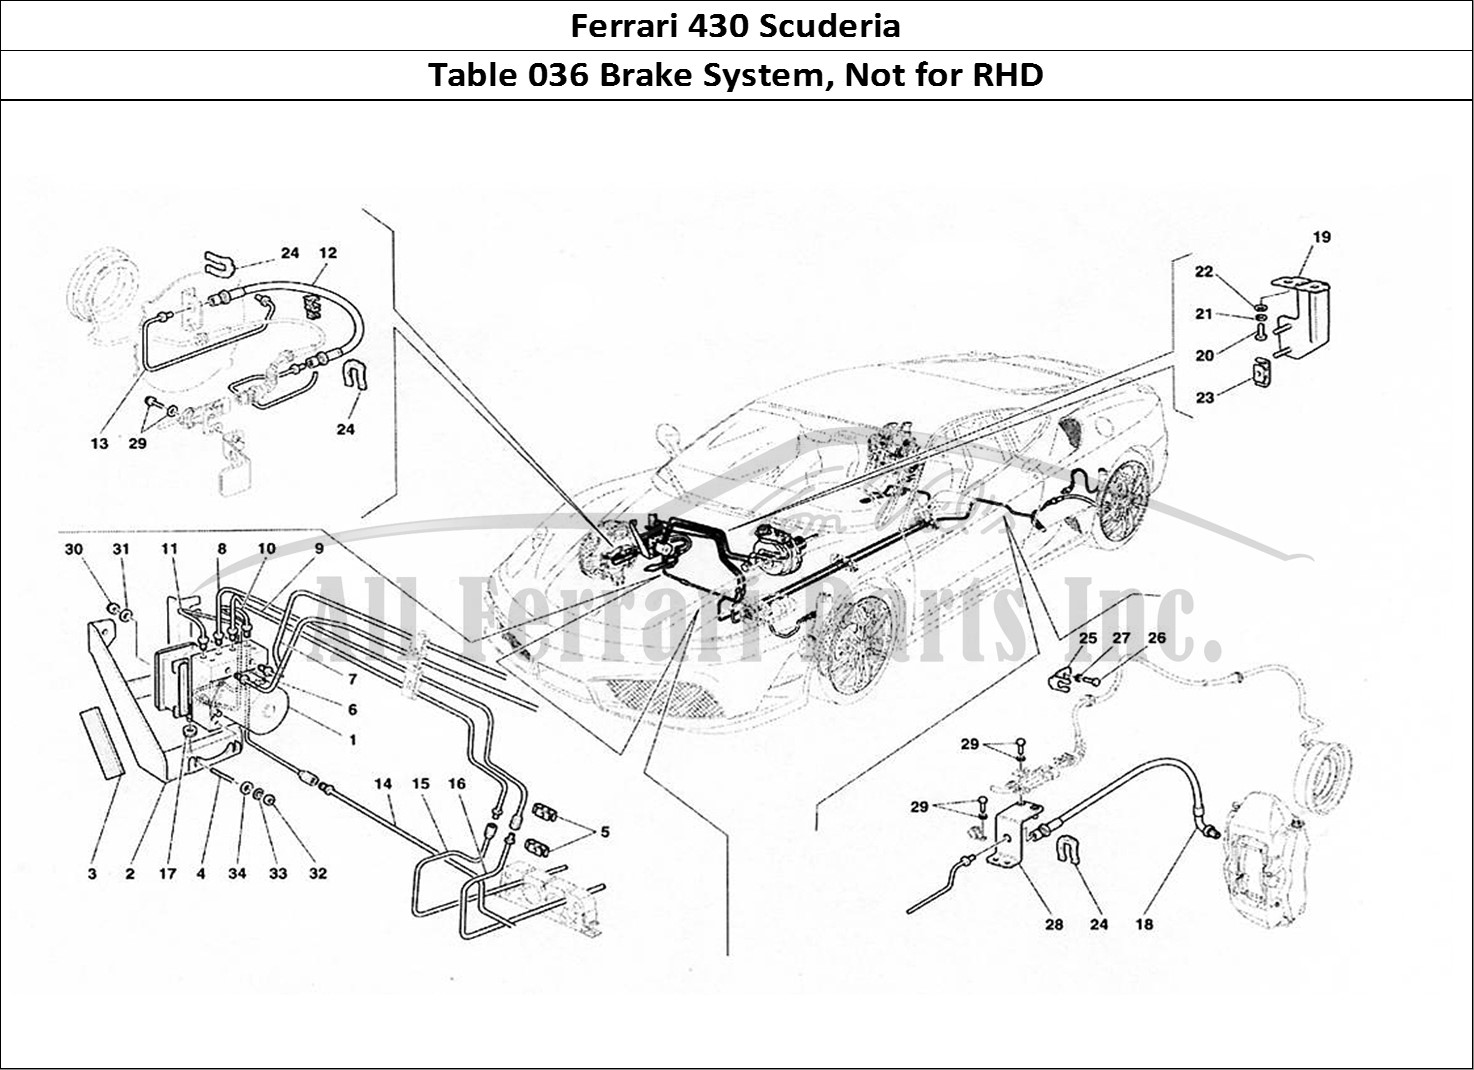 Ferrari Parts Ferrari 430 Scuderia Page 036 Brake System - Not for RH